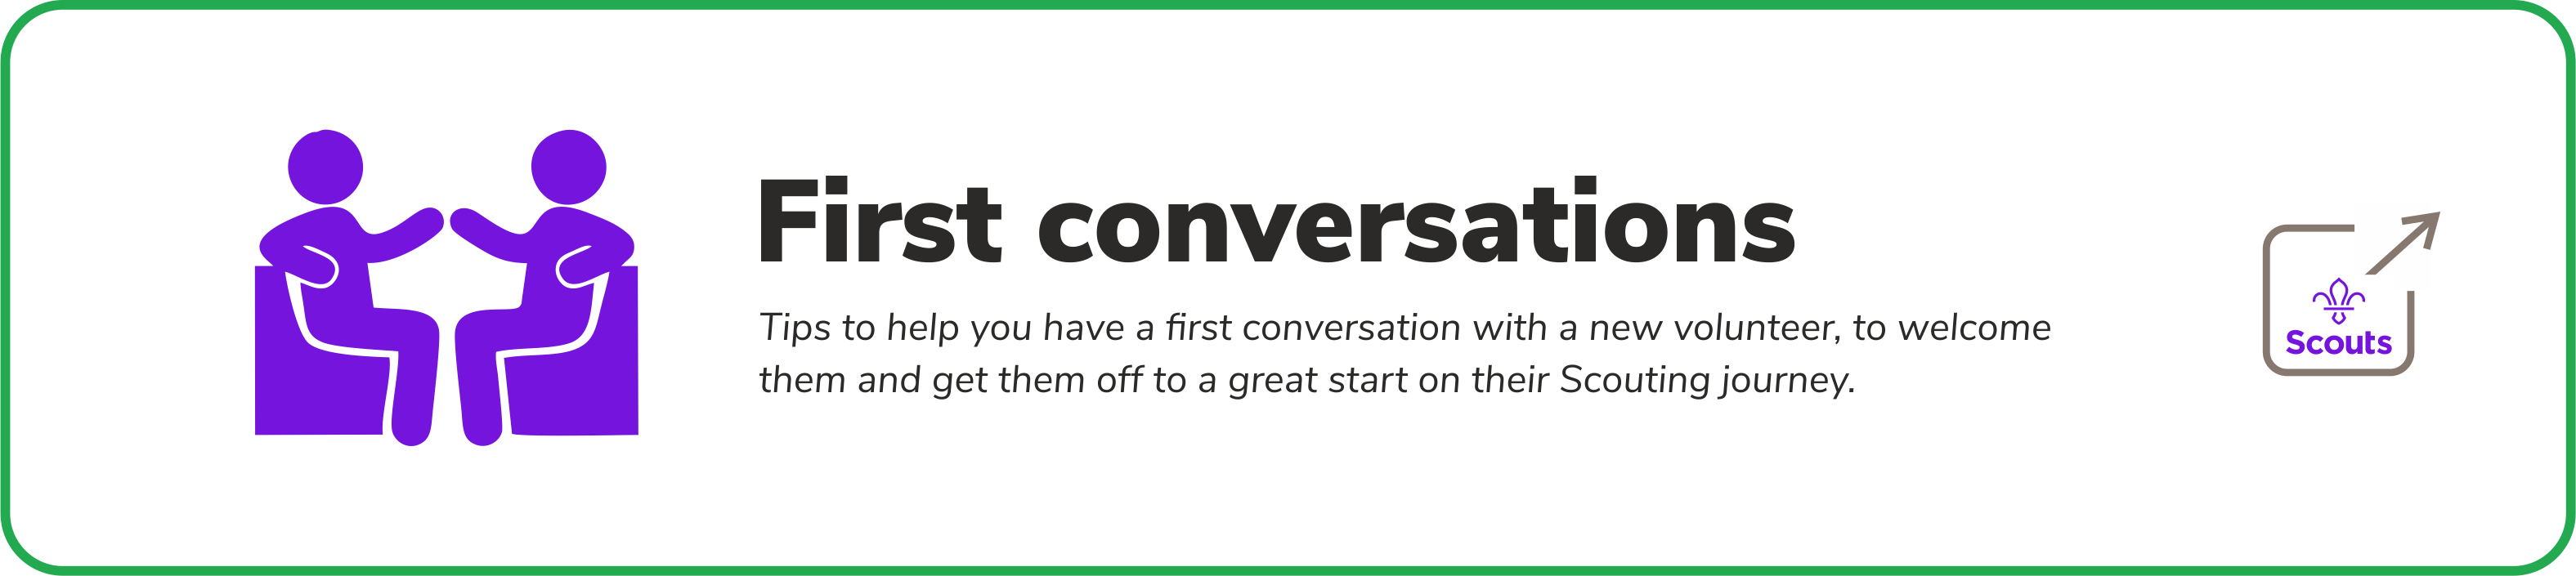 First conversations